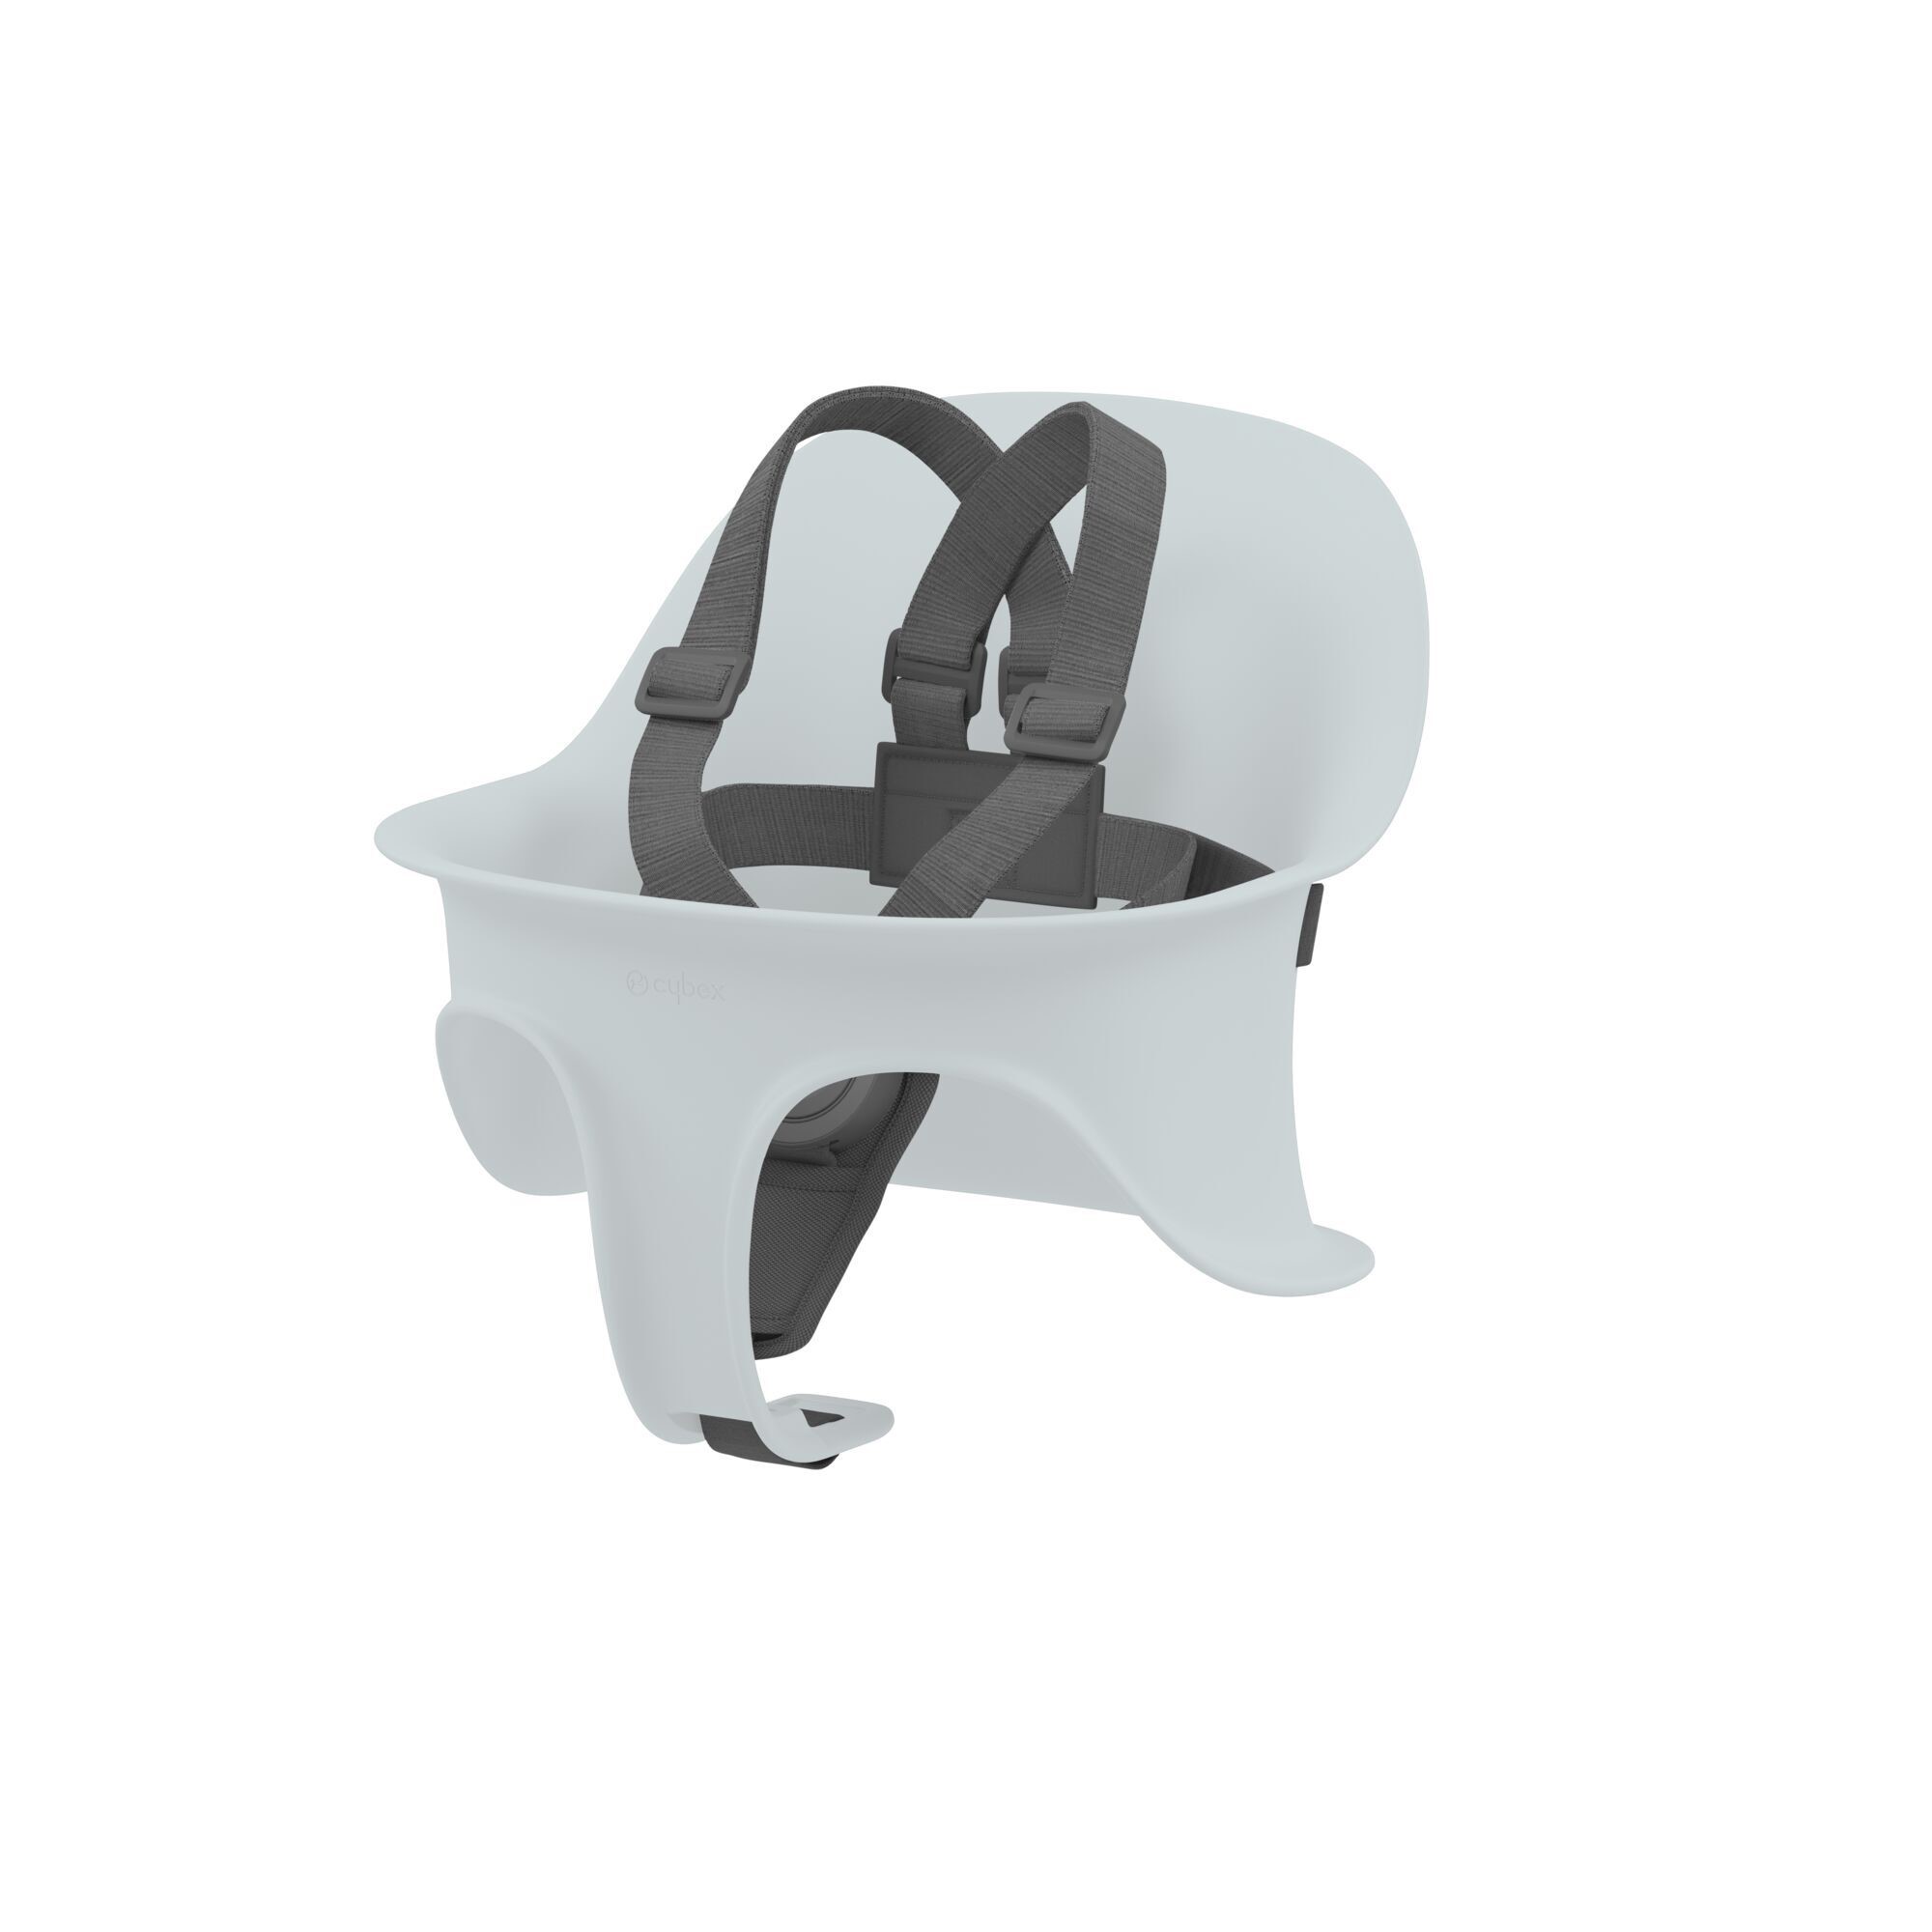 Ремень для стульев Lemo Light Grey серый (521003271) - фото 2